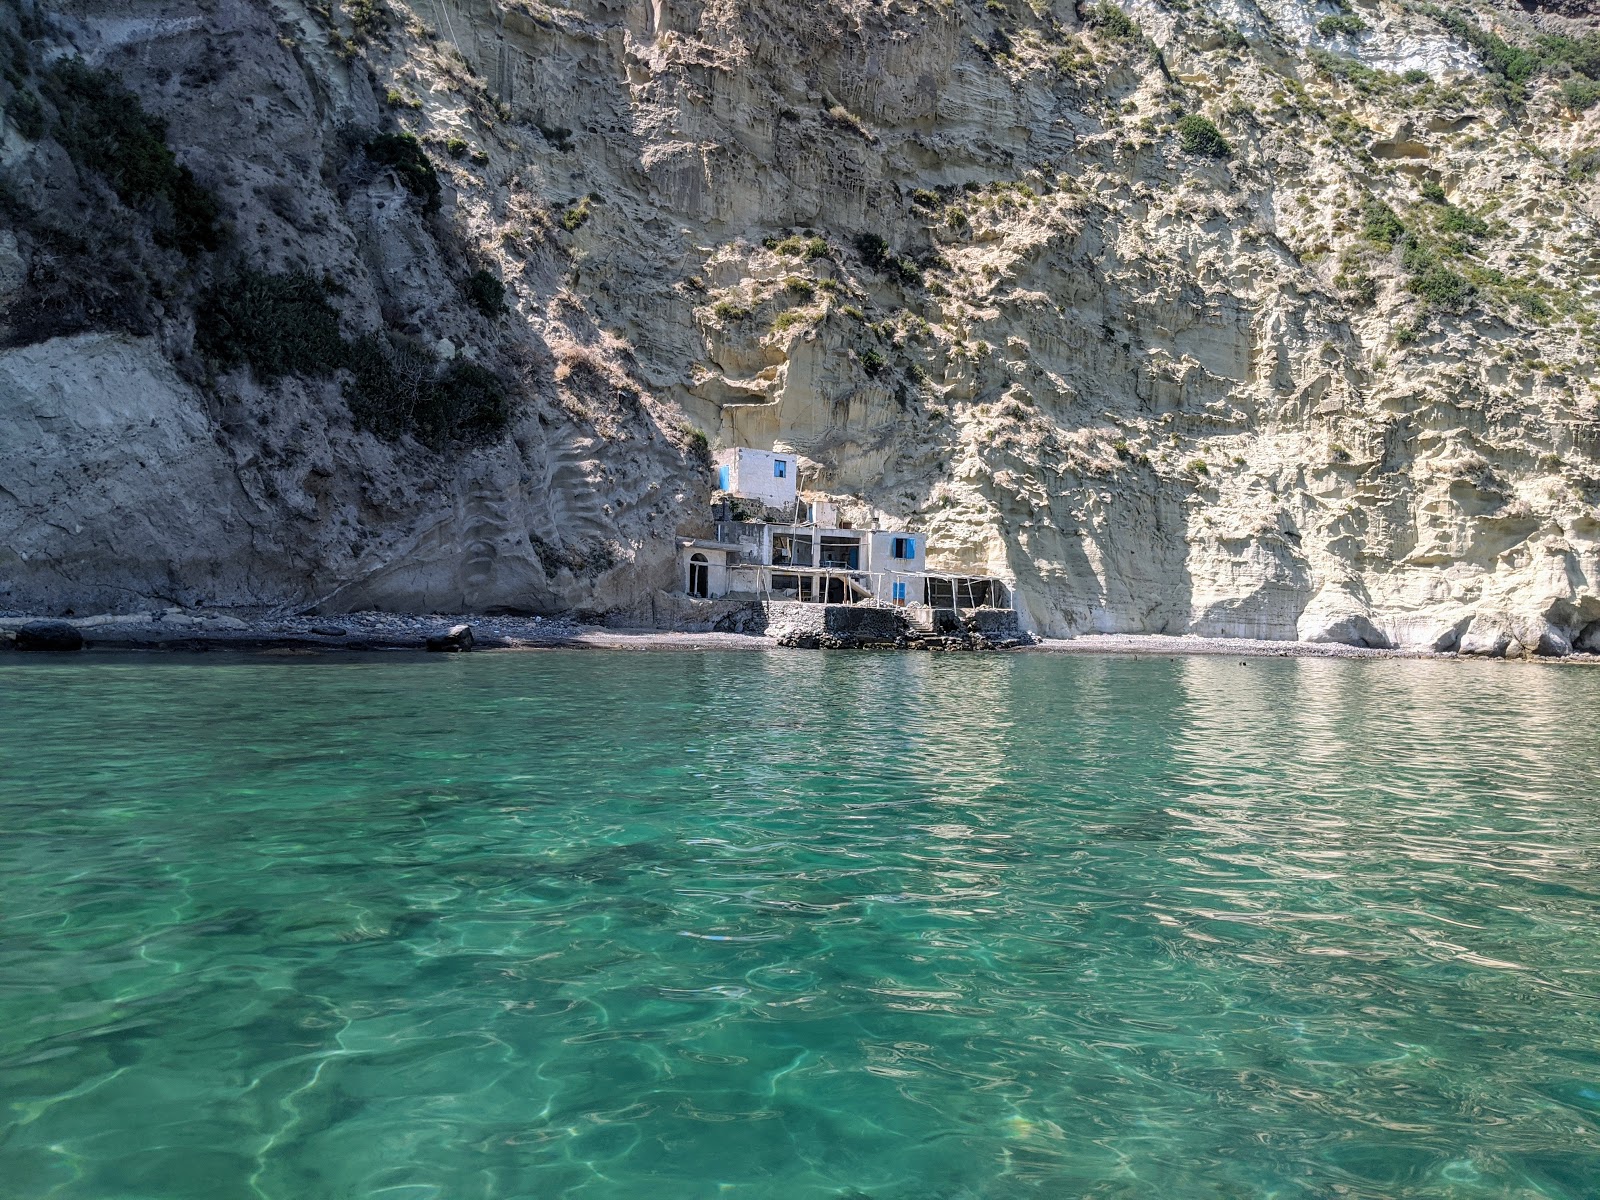 Foto av Spiaggia San Pancrazio med lätt sten yta